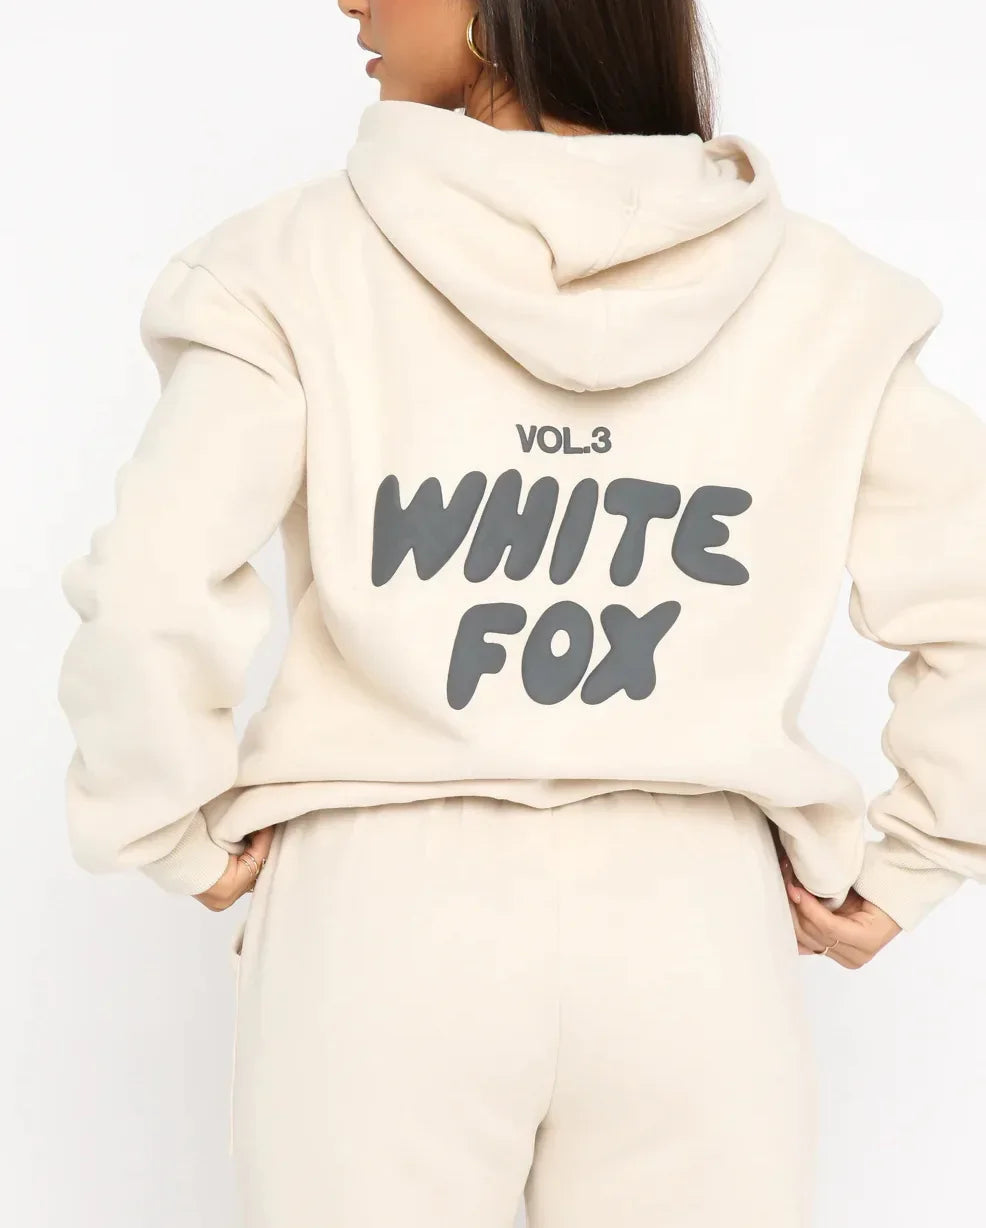 White Fox Hoodie Women Casual Print Two-Piece Hoodies Spring Long Sleeve Hooded Sweatshirt Loose Tops Ladies Sport Wear Designer Suits Streetwear